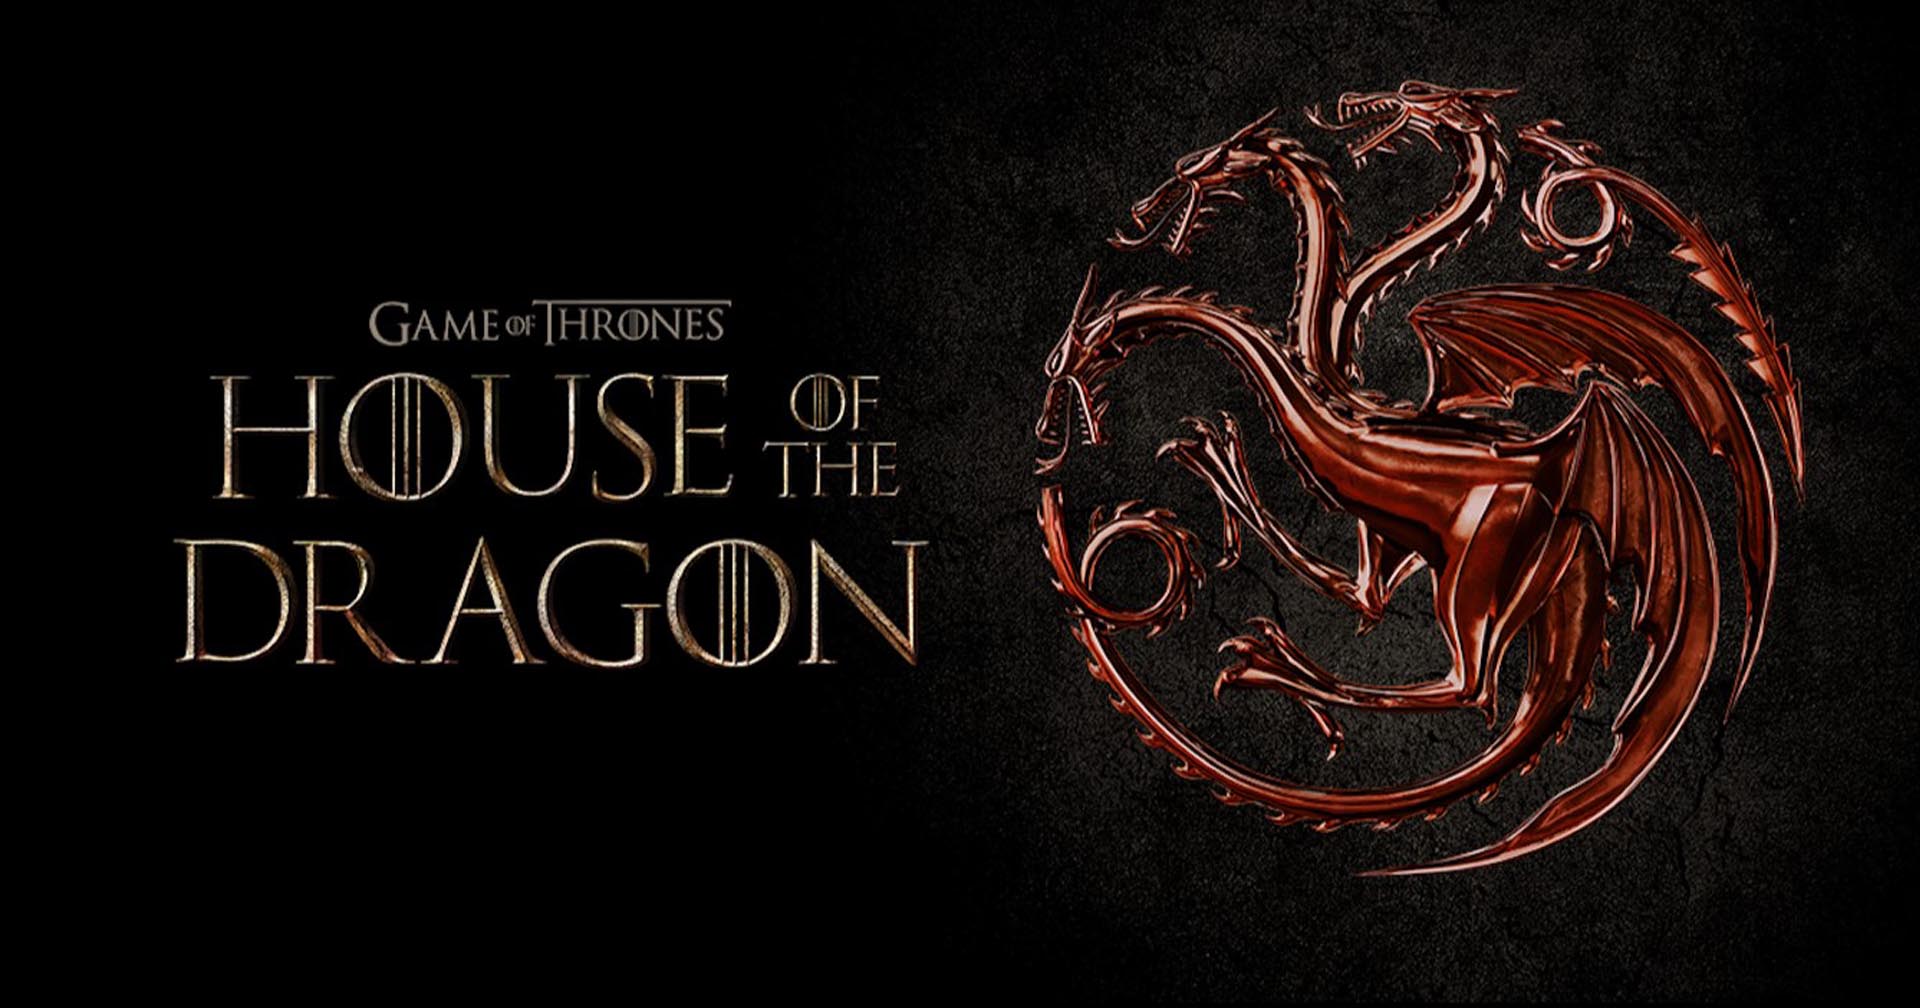 ‘House of the Dragon’ ซีซันแรกจะมีมังกรถึง 9 ตัว ได้เห็นกันแบบจุใจแน่นอน